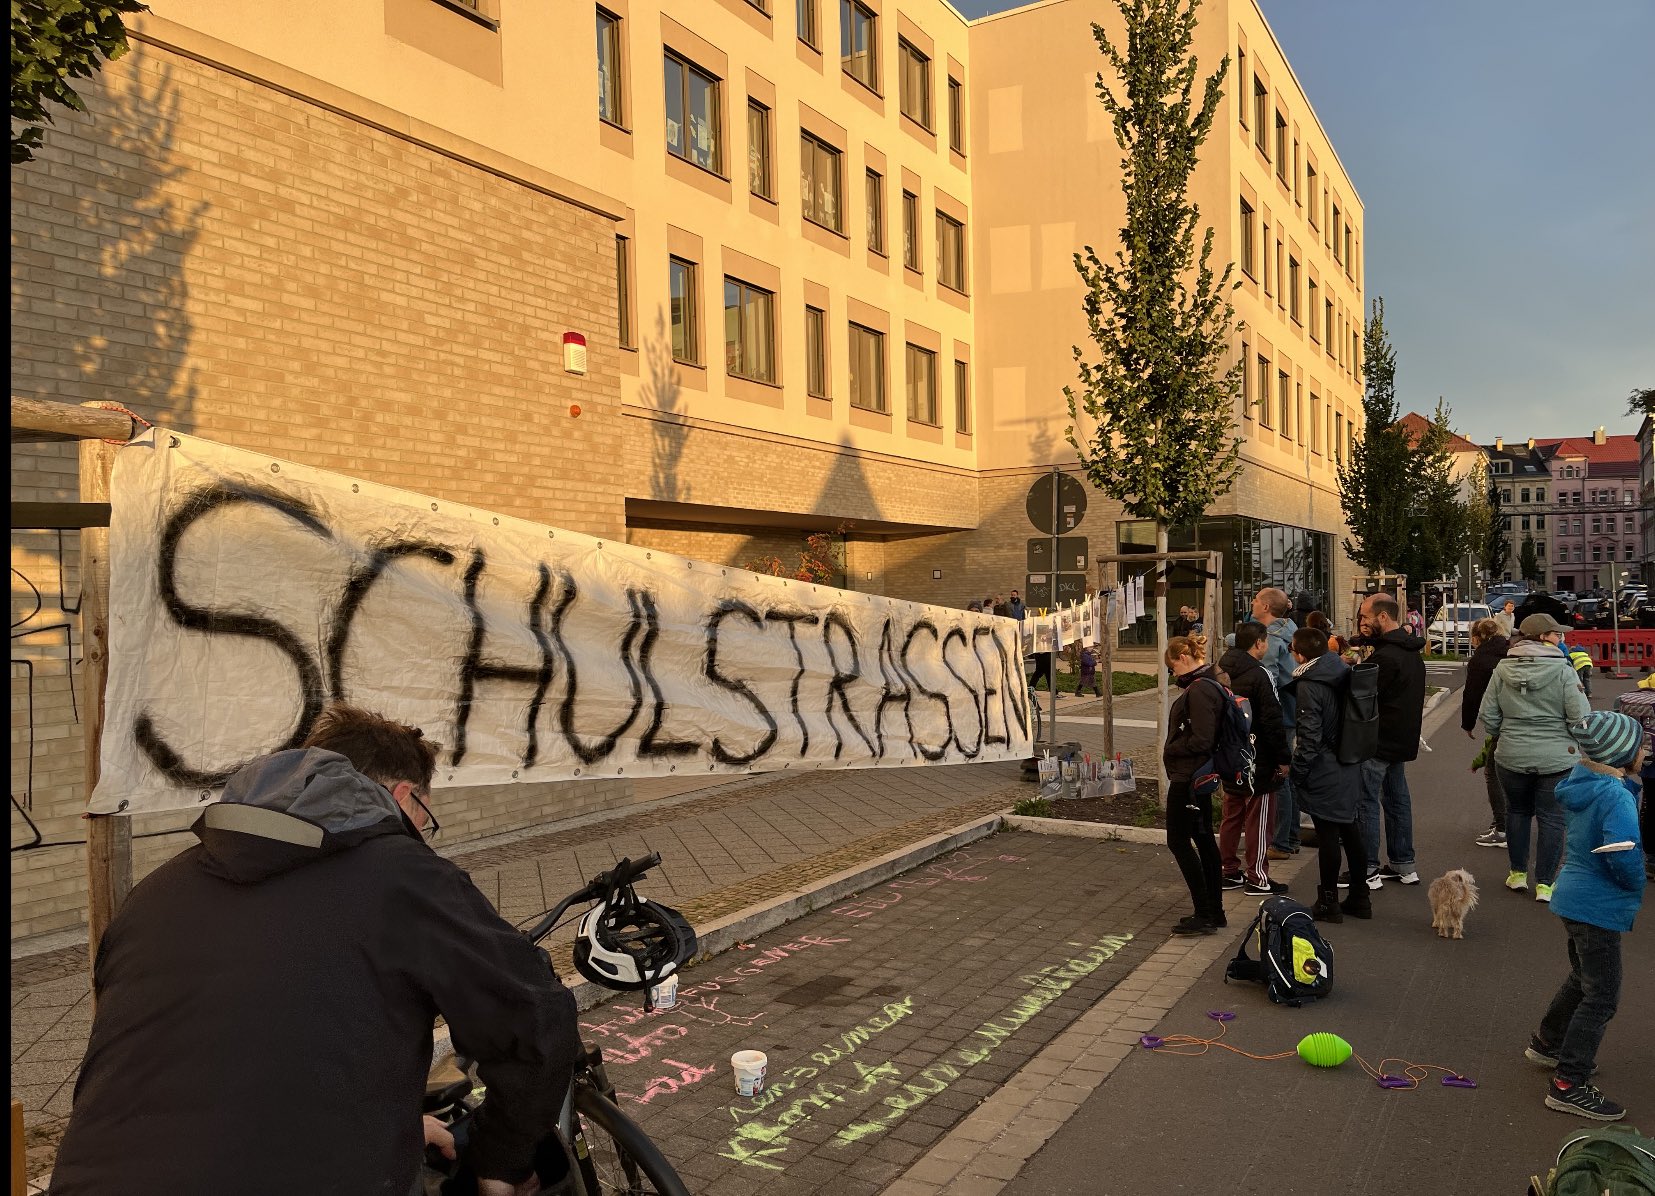   »Kein Vor, kein Zurück« | Eltern demonstrieren vor der Grundschule Gießerstraße gegen Verkehrsproblem  